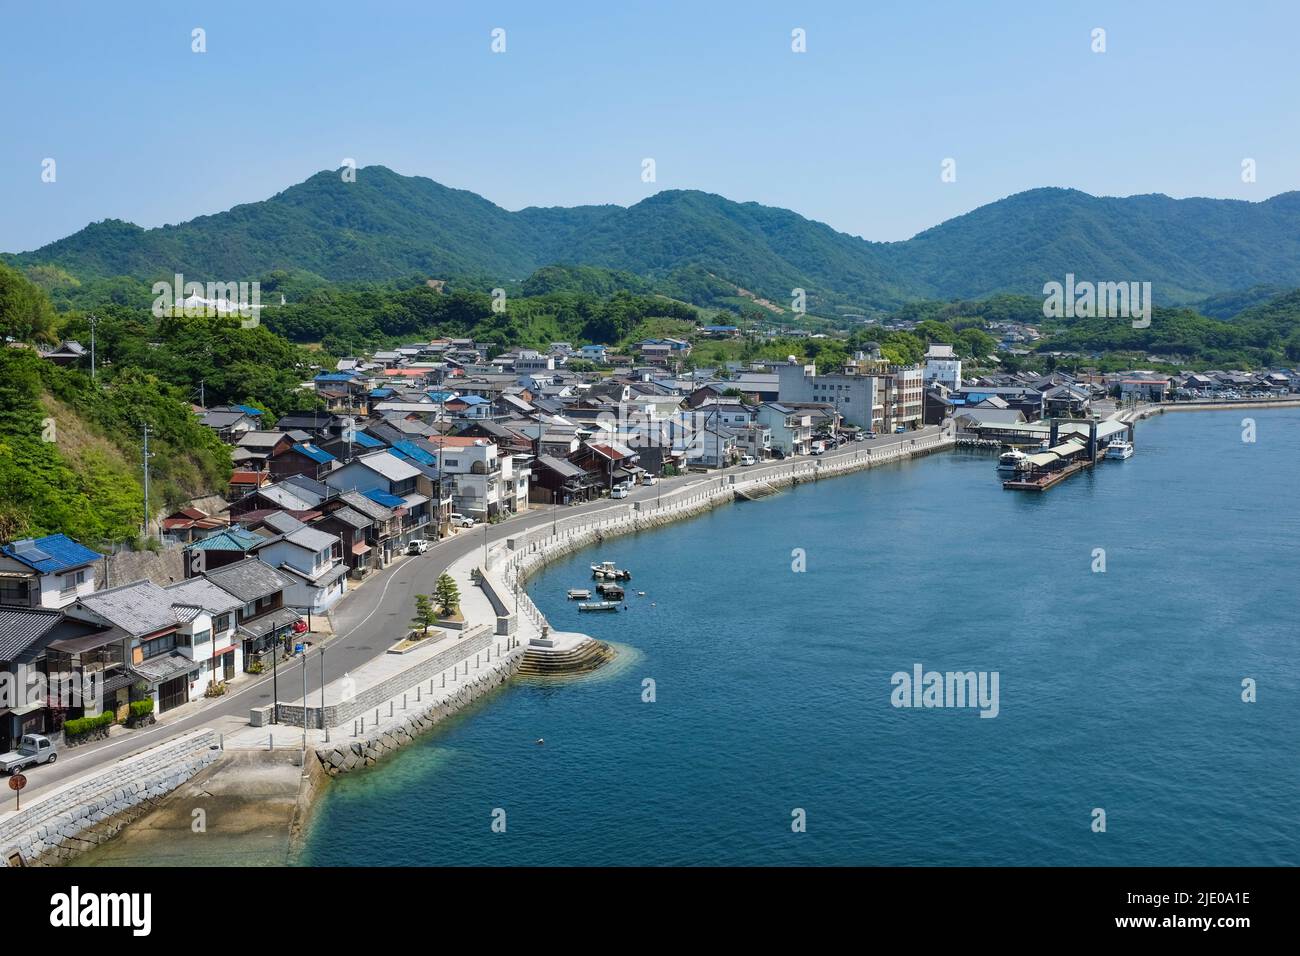 Die Stadt Setodacho-setoda auf der Insel Ikuchi (Ikuchijima) im japanischen Binnenmeer (Seto Naikai). Stockfoto